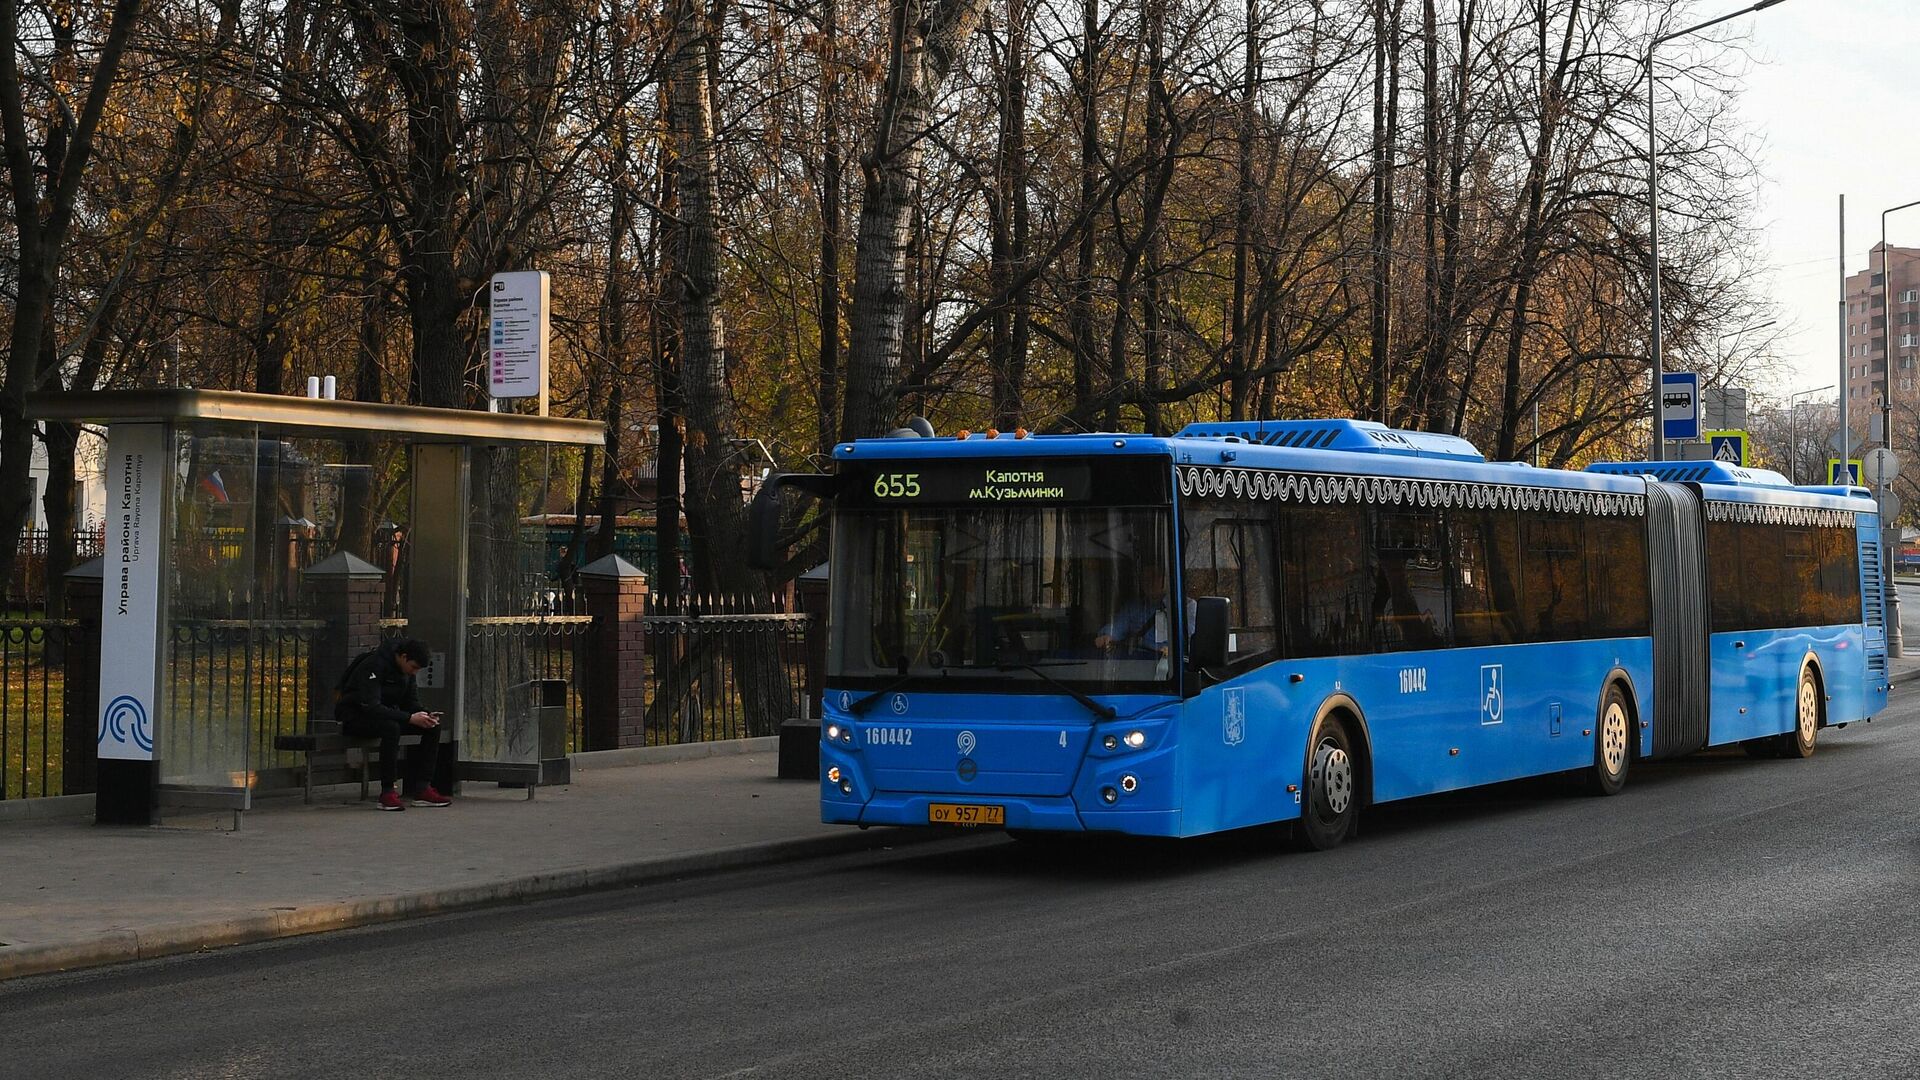 Автобус, курсирующий по маршруту 655, подъезжает к остановке в Капотне - РИА Новости, 1920, 30.01.2020